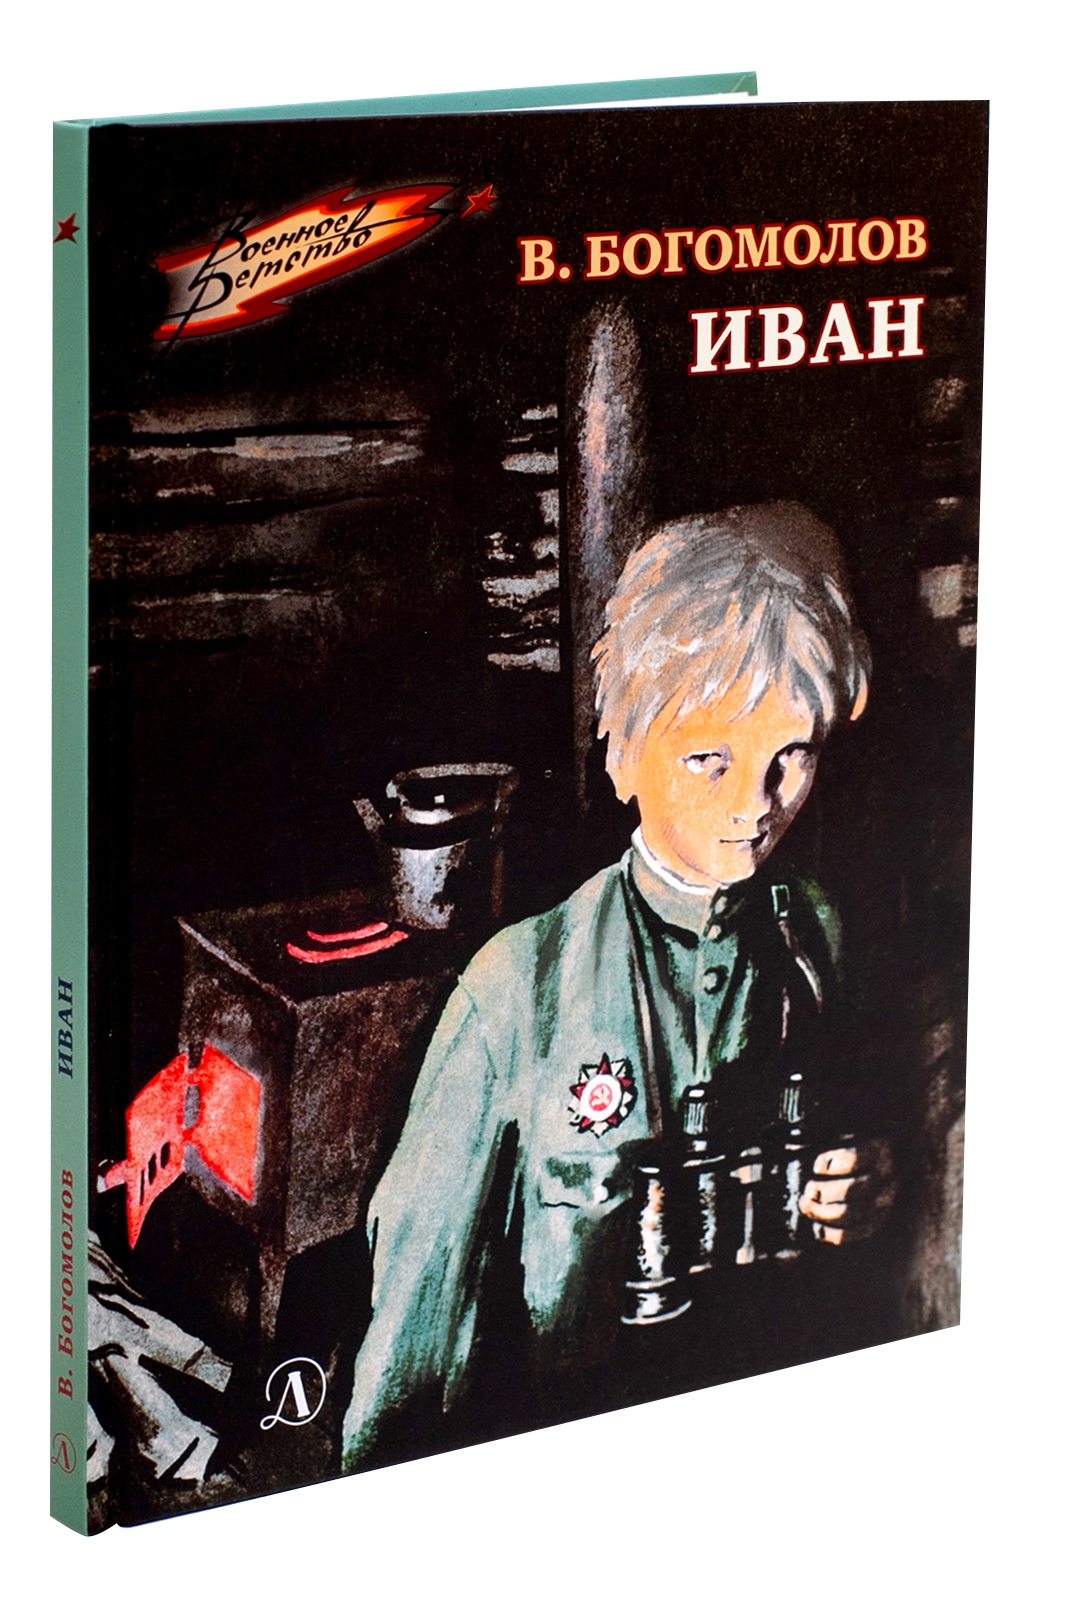 В школьной библиотеке  проходит книжно- иллюстративная выставка : Читаем детям о войне. Владимир Богомолов «ИВАН».